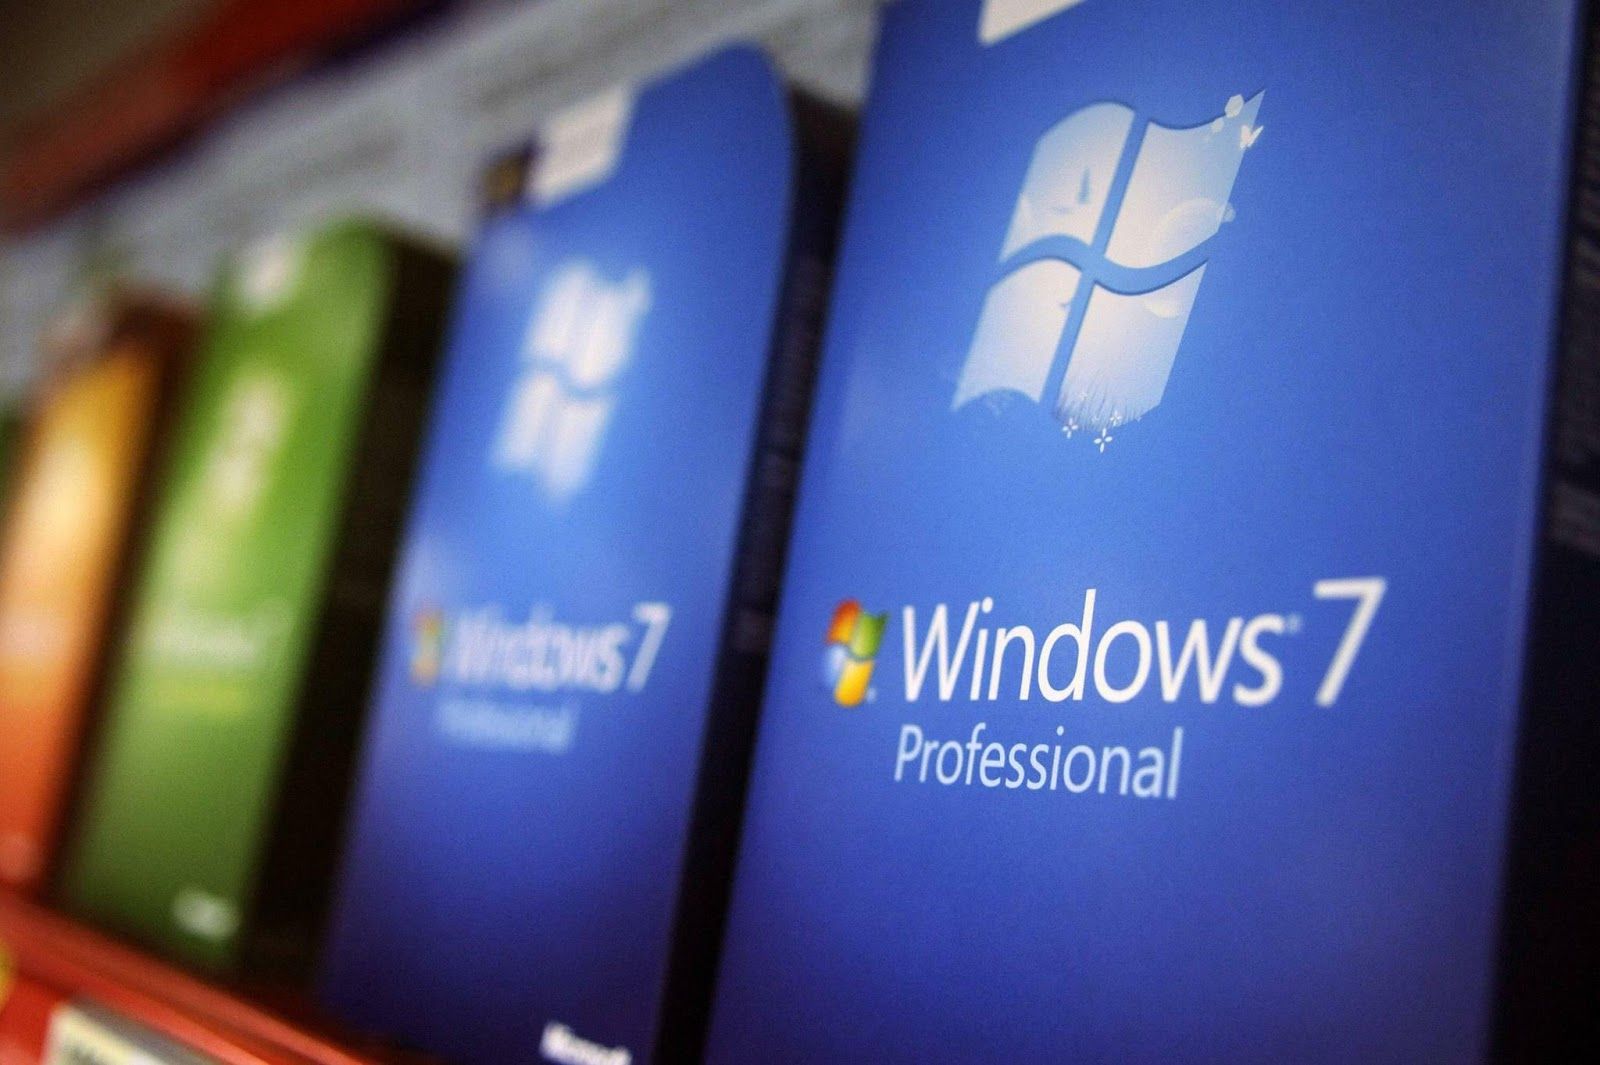 Microsoft khai tử tính năng cập nhật driver cho Windows 7 bằng Windows Update, không cấp chứng nhận driver mới từ 2023